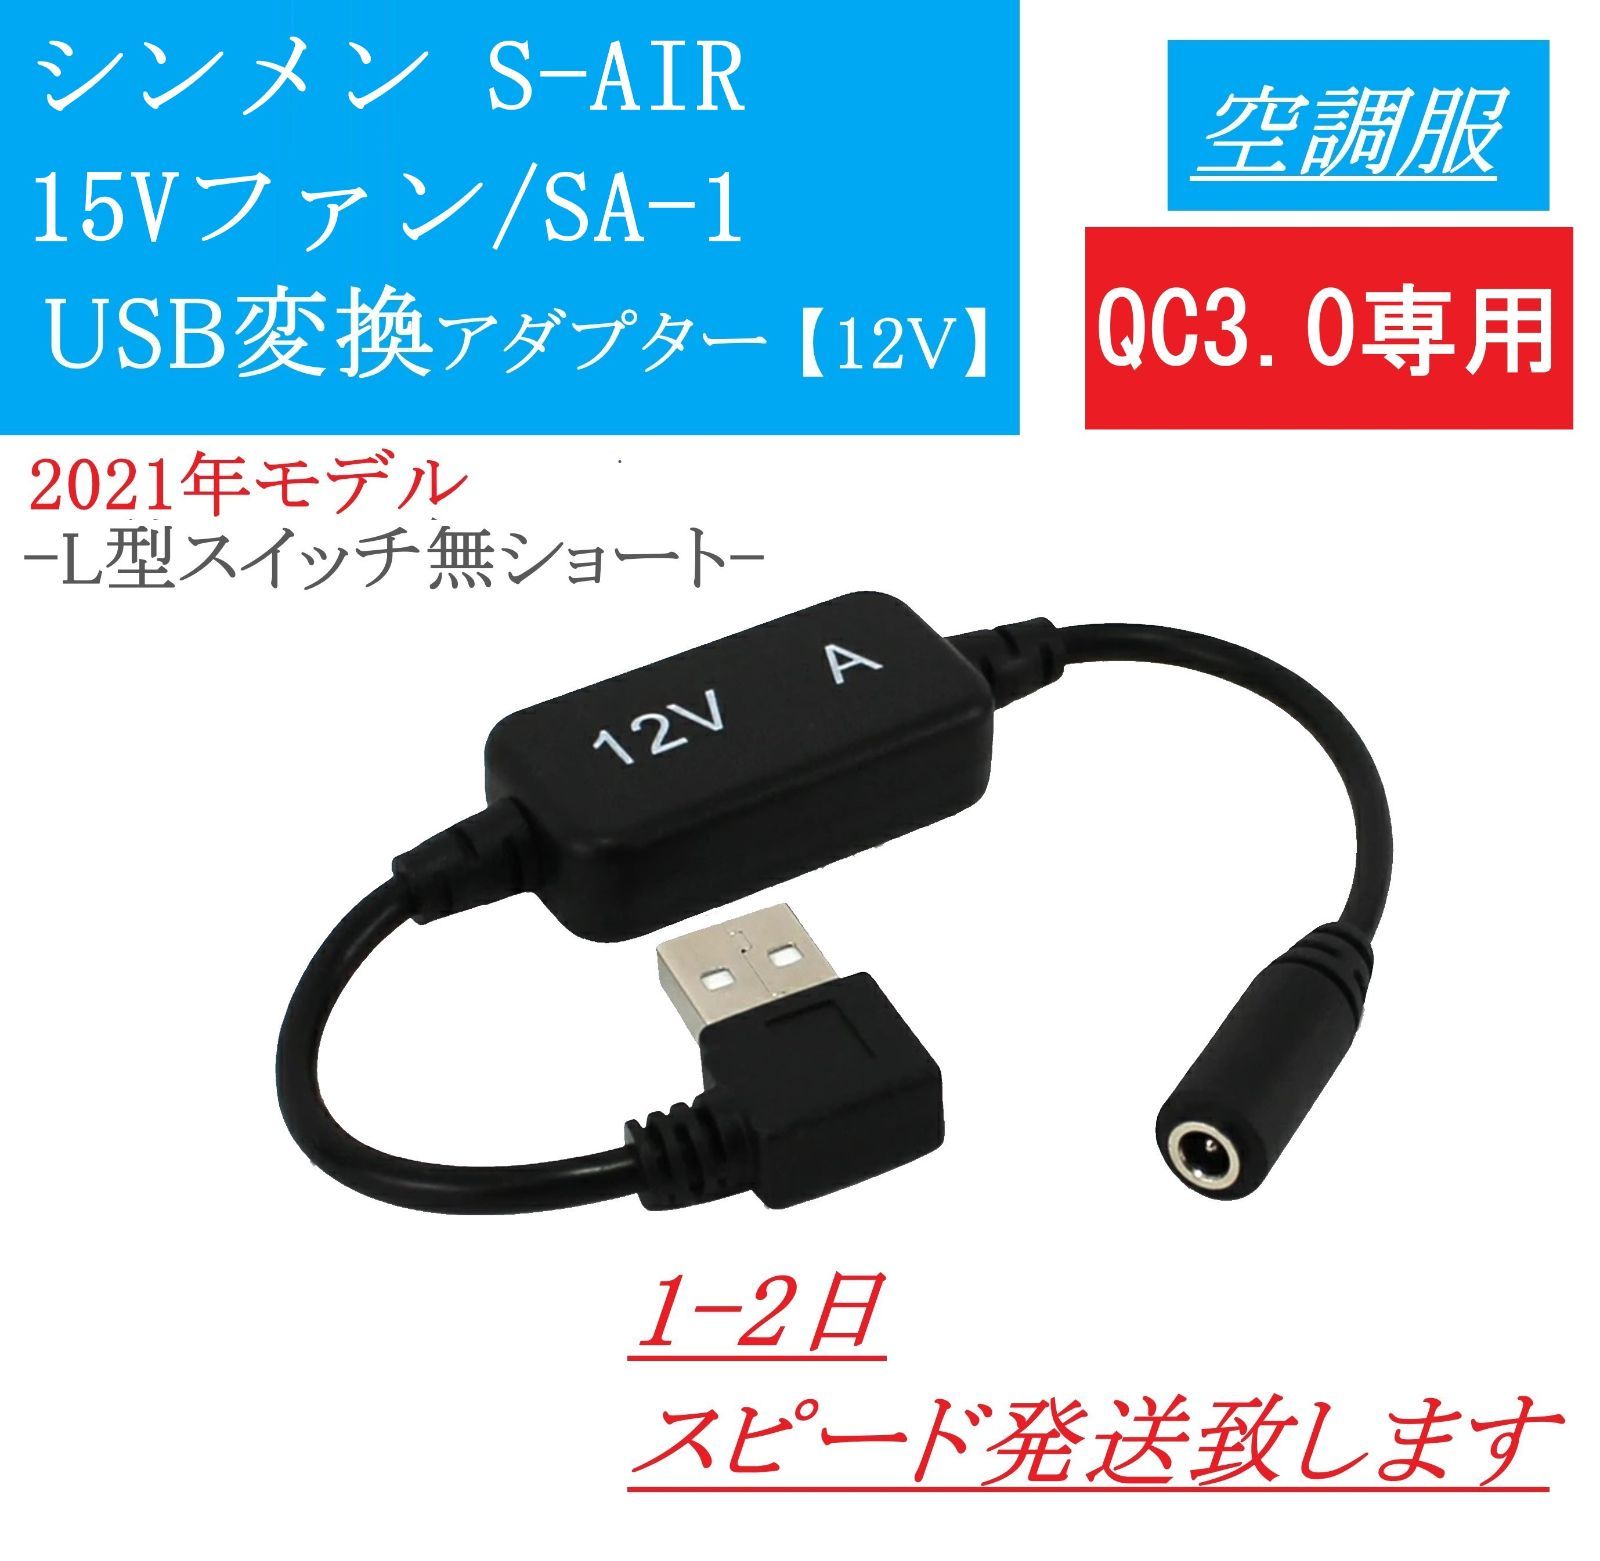 シンメン S-AIR 15Vファン SA-1 USB変換アダプター 12V昇圧 市販のモバイルバッテリーで使える 空調服 ファン付き作業服 エスエアー  ULTIMAT 2021年モデル 変換ケーブル 昇圧アダプター